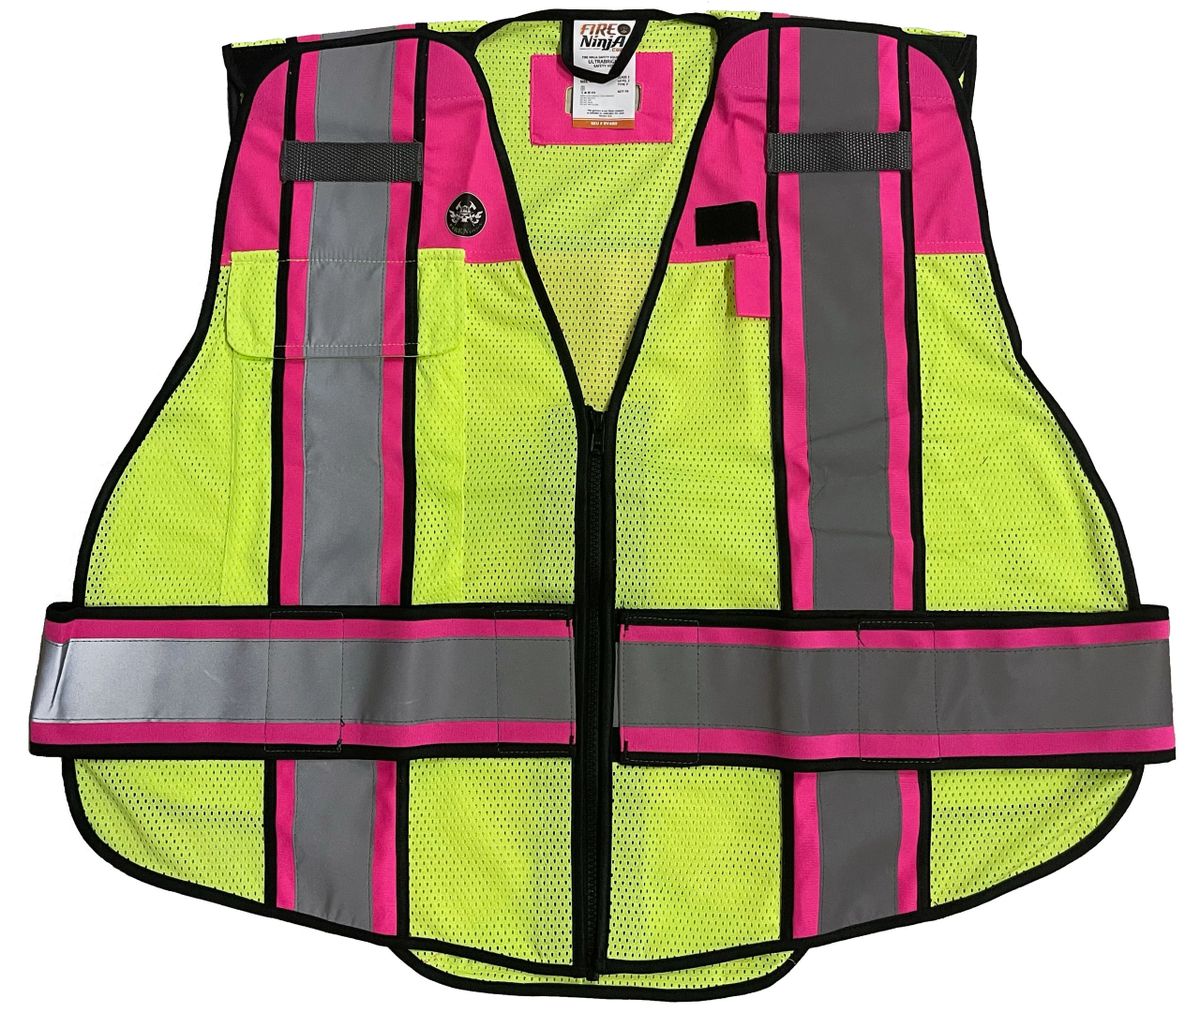 Ultrabright Pink Public Safety Vest